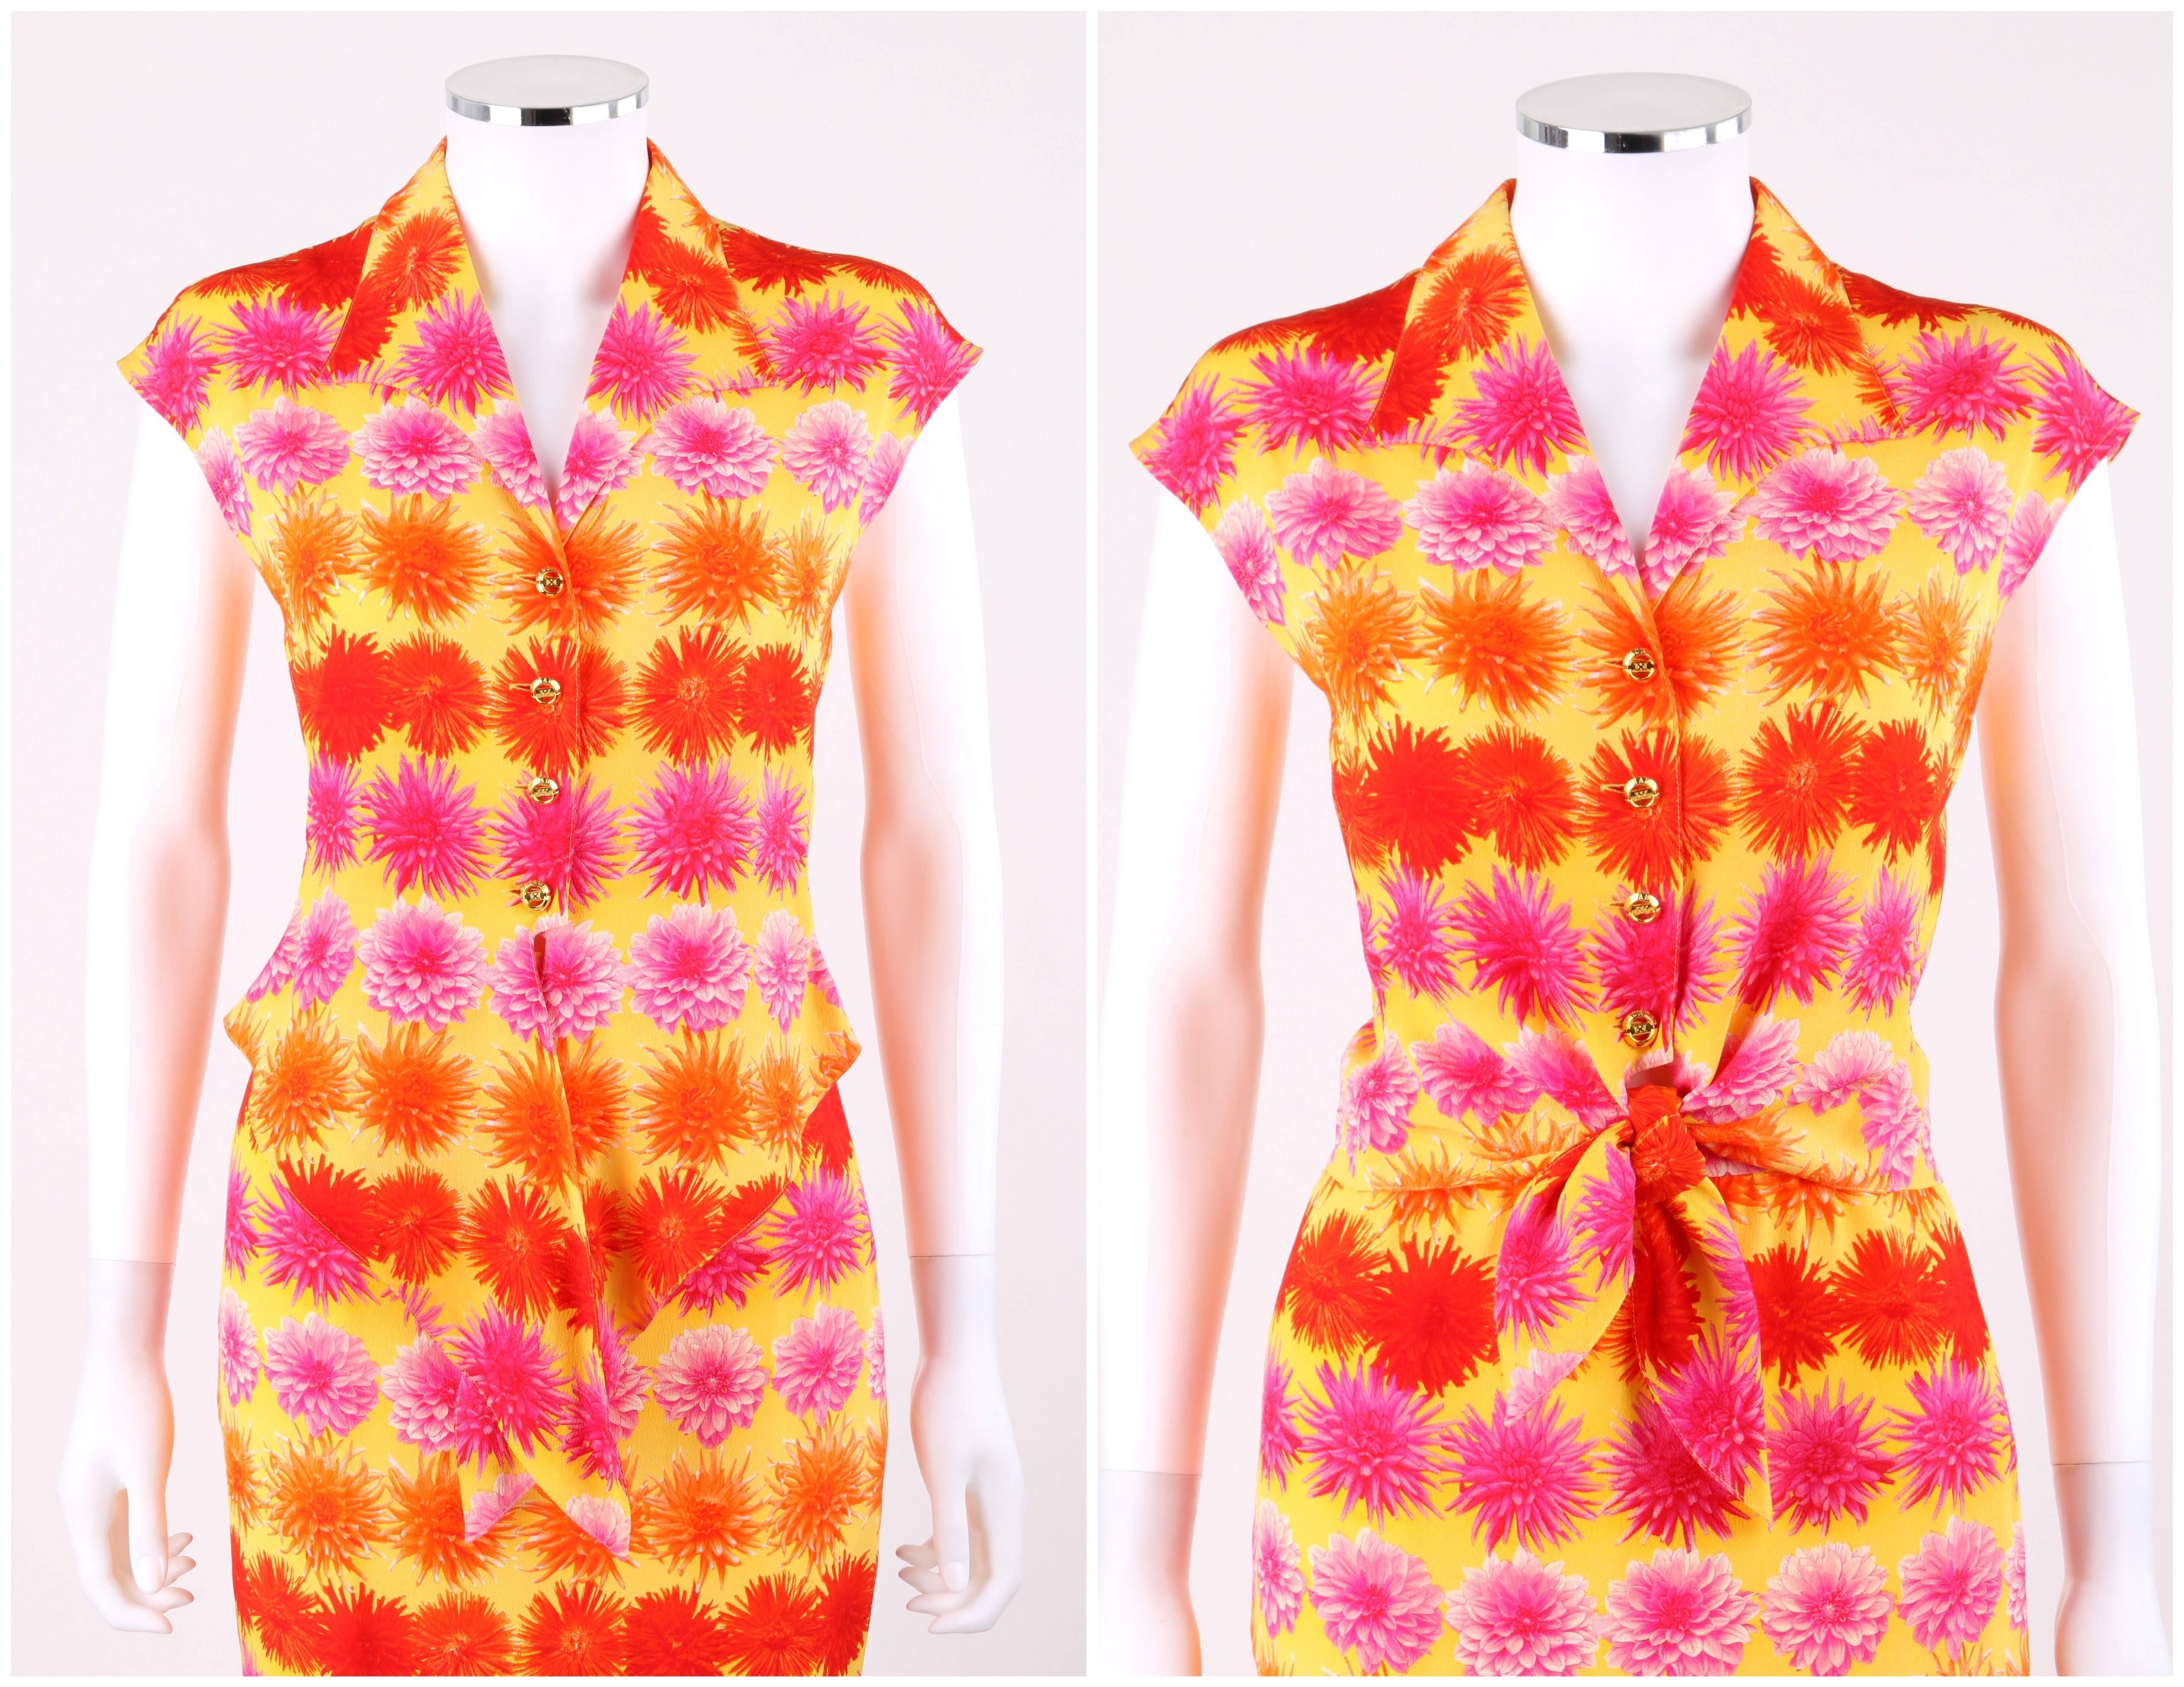 Ensemble deux pièces Escada Margaretha Ley c.1990's blouse jupe jupe en soie imprimé floral ; Neuf avec étiquettes. Imprimé floral multicolore et audacieux dans des tons de rouge, rose et orange sur de la soie jaune. Col à revers pointu. Épaule